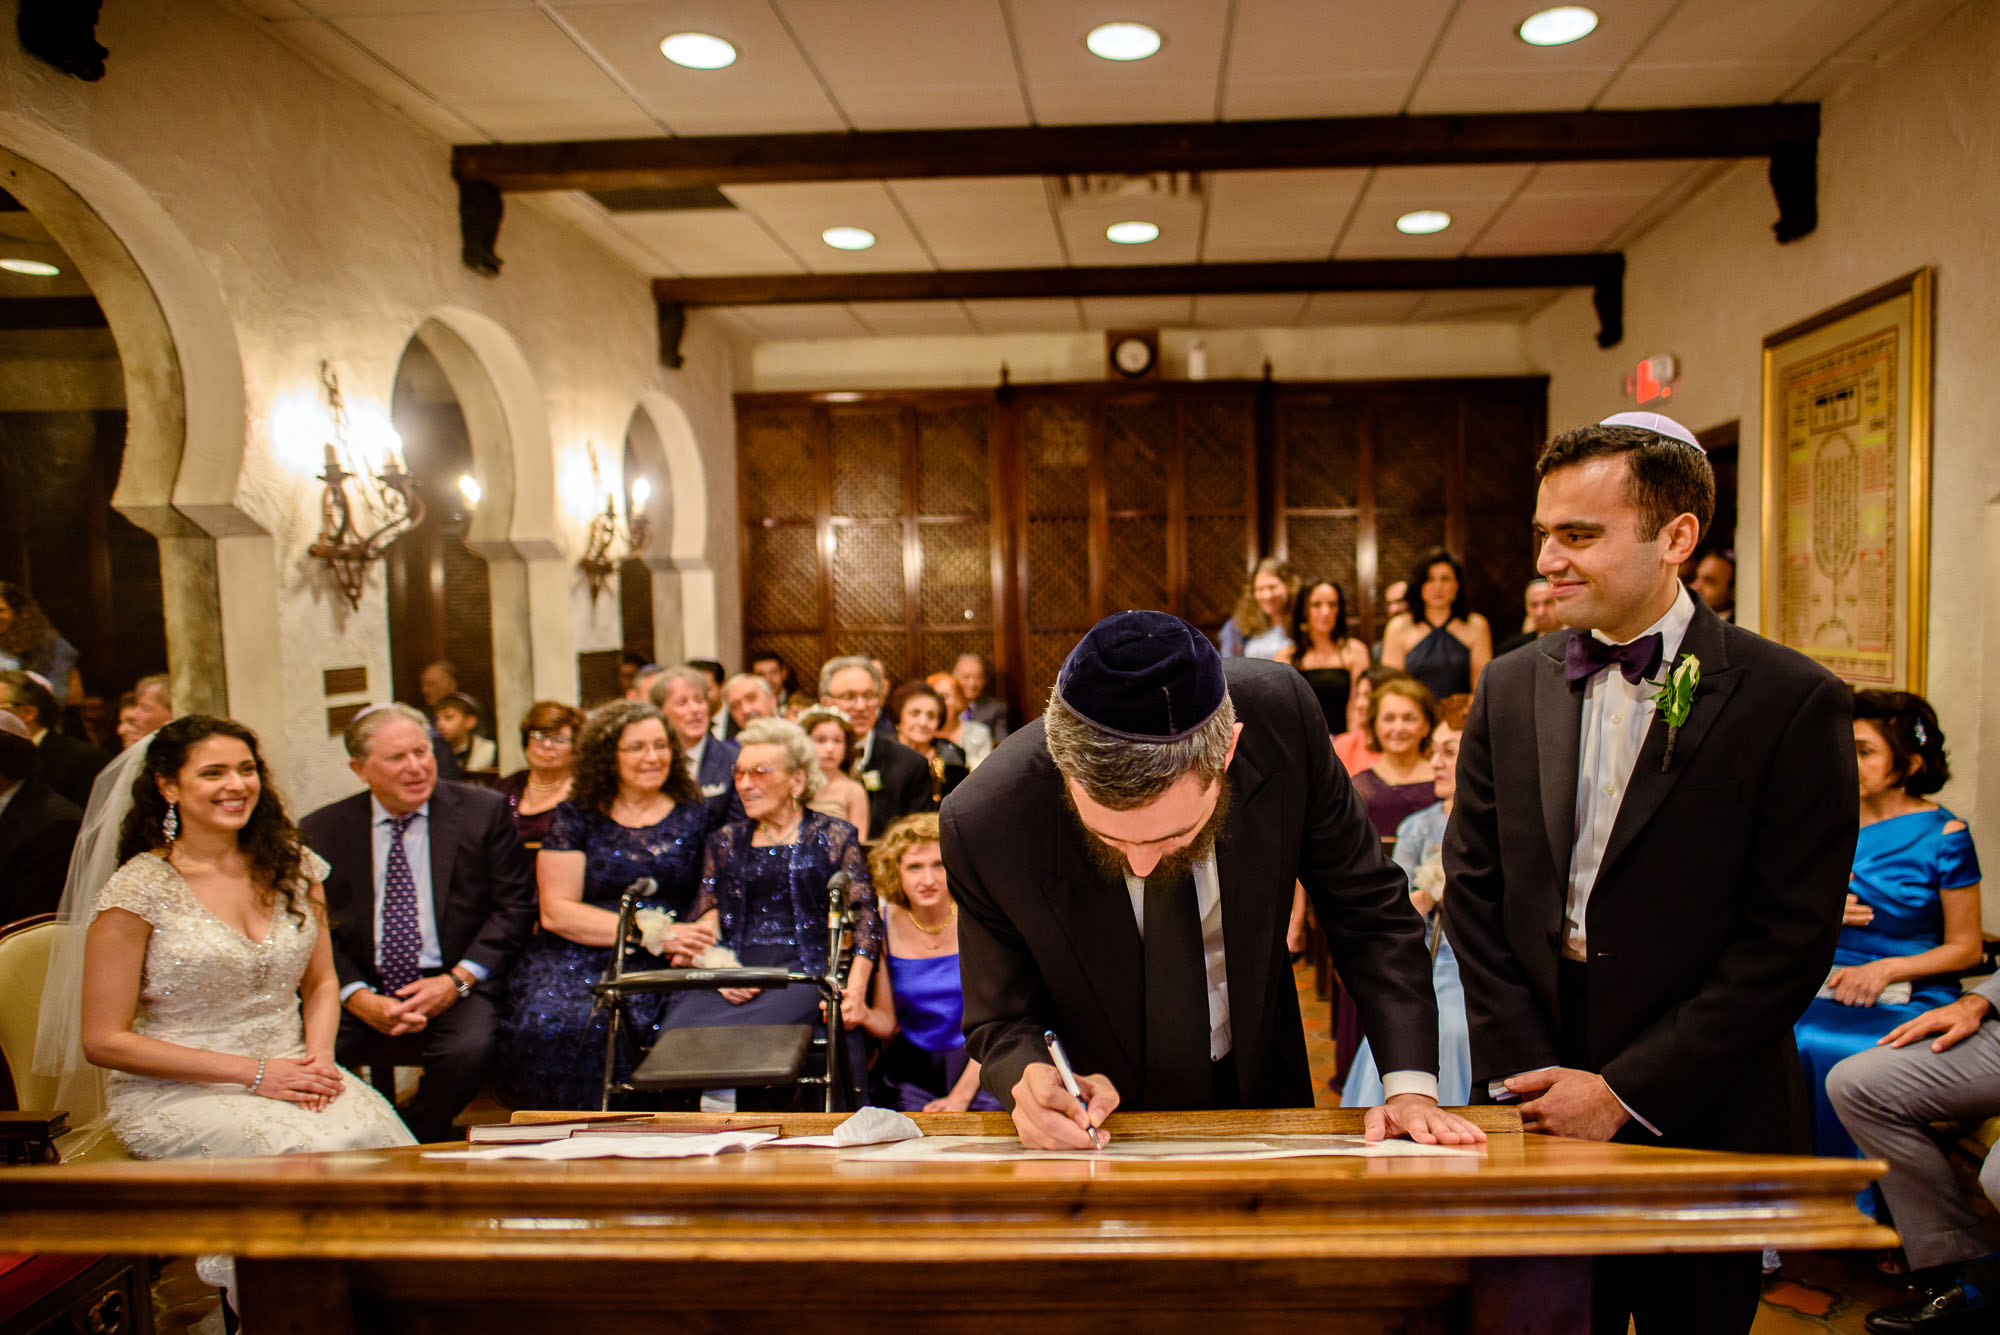 The Sephardic Temple wedding Ketubah signing